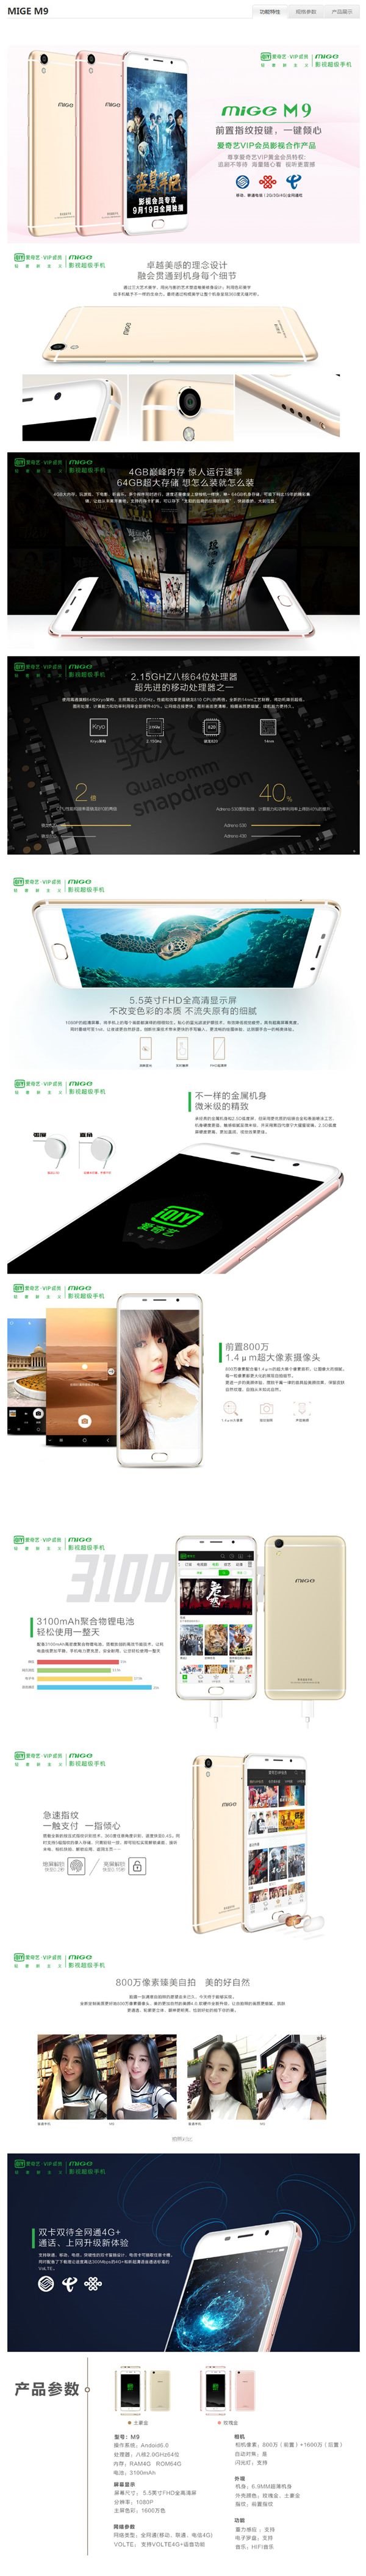 爱奇艺M9手机新品完整曝光：VIP黄金会员特权加持